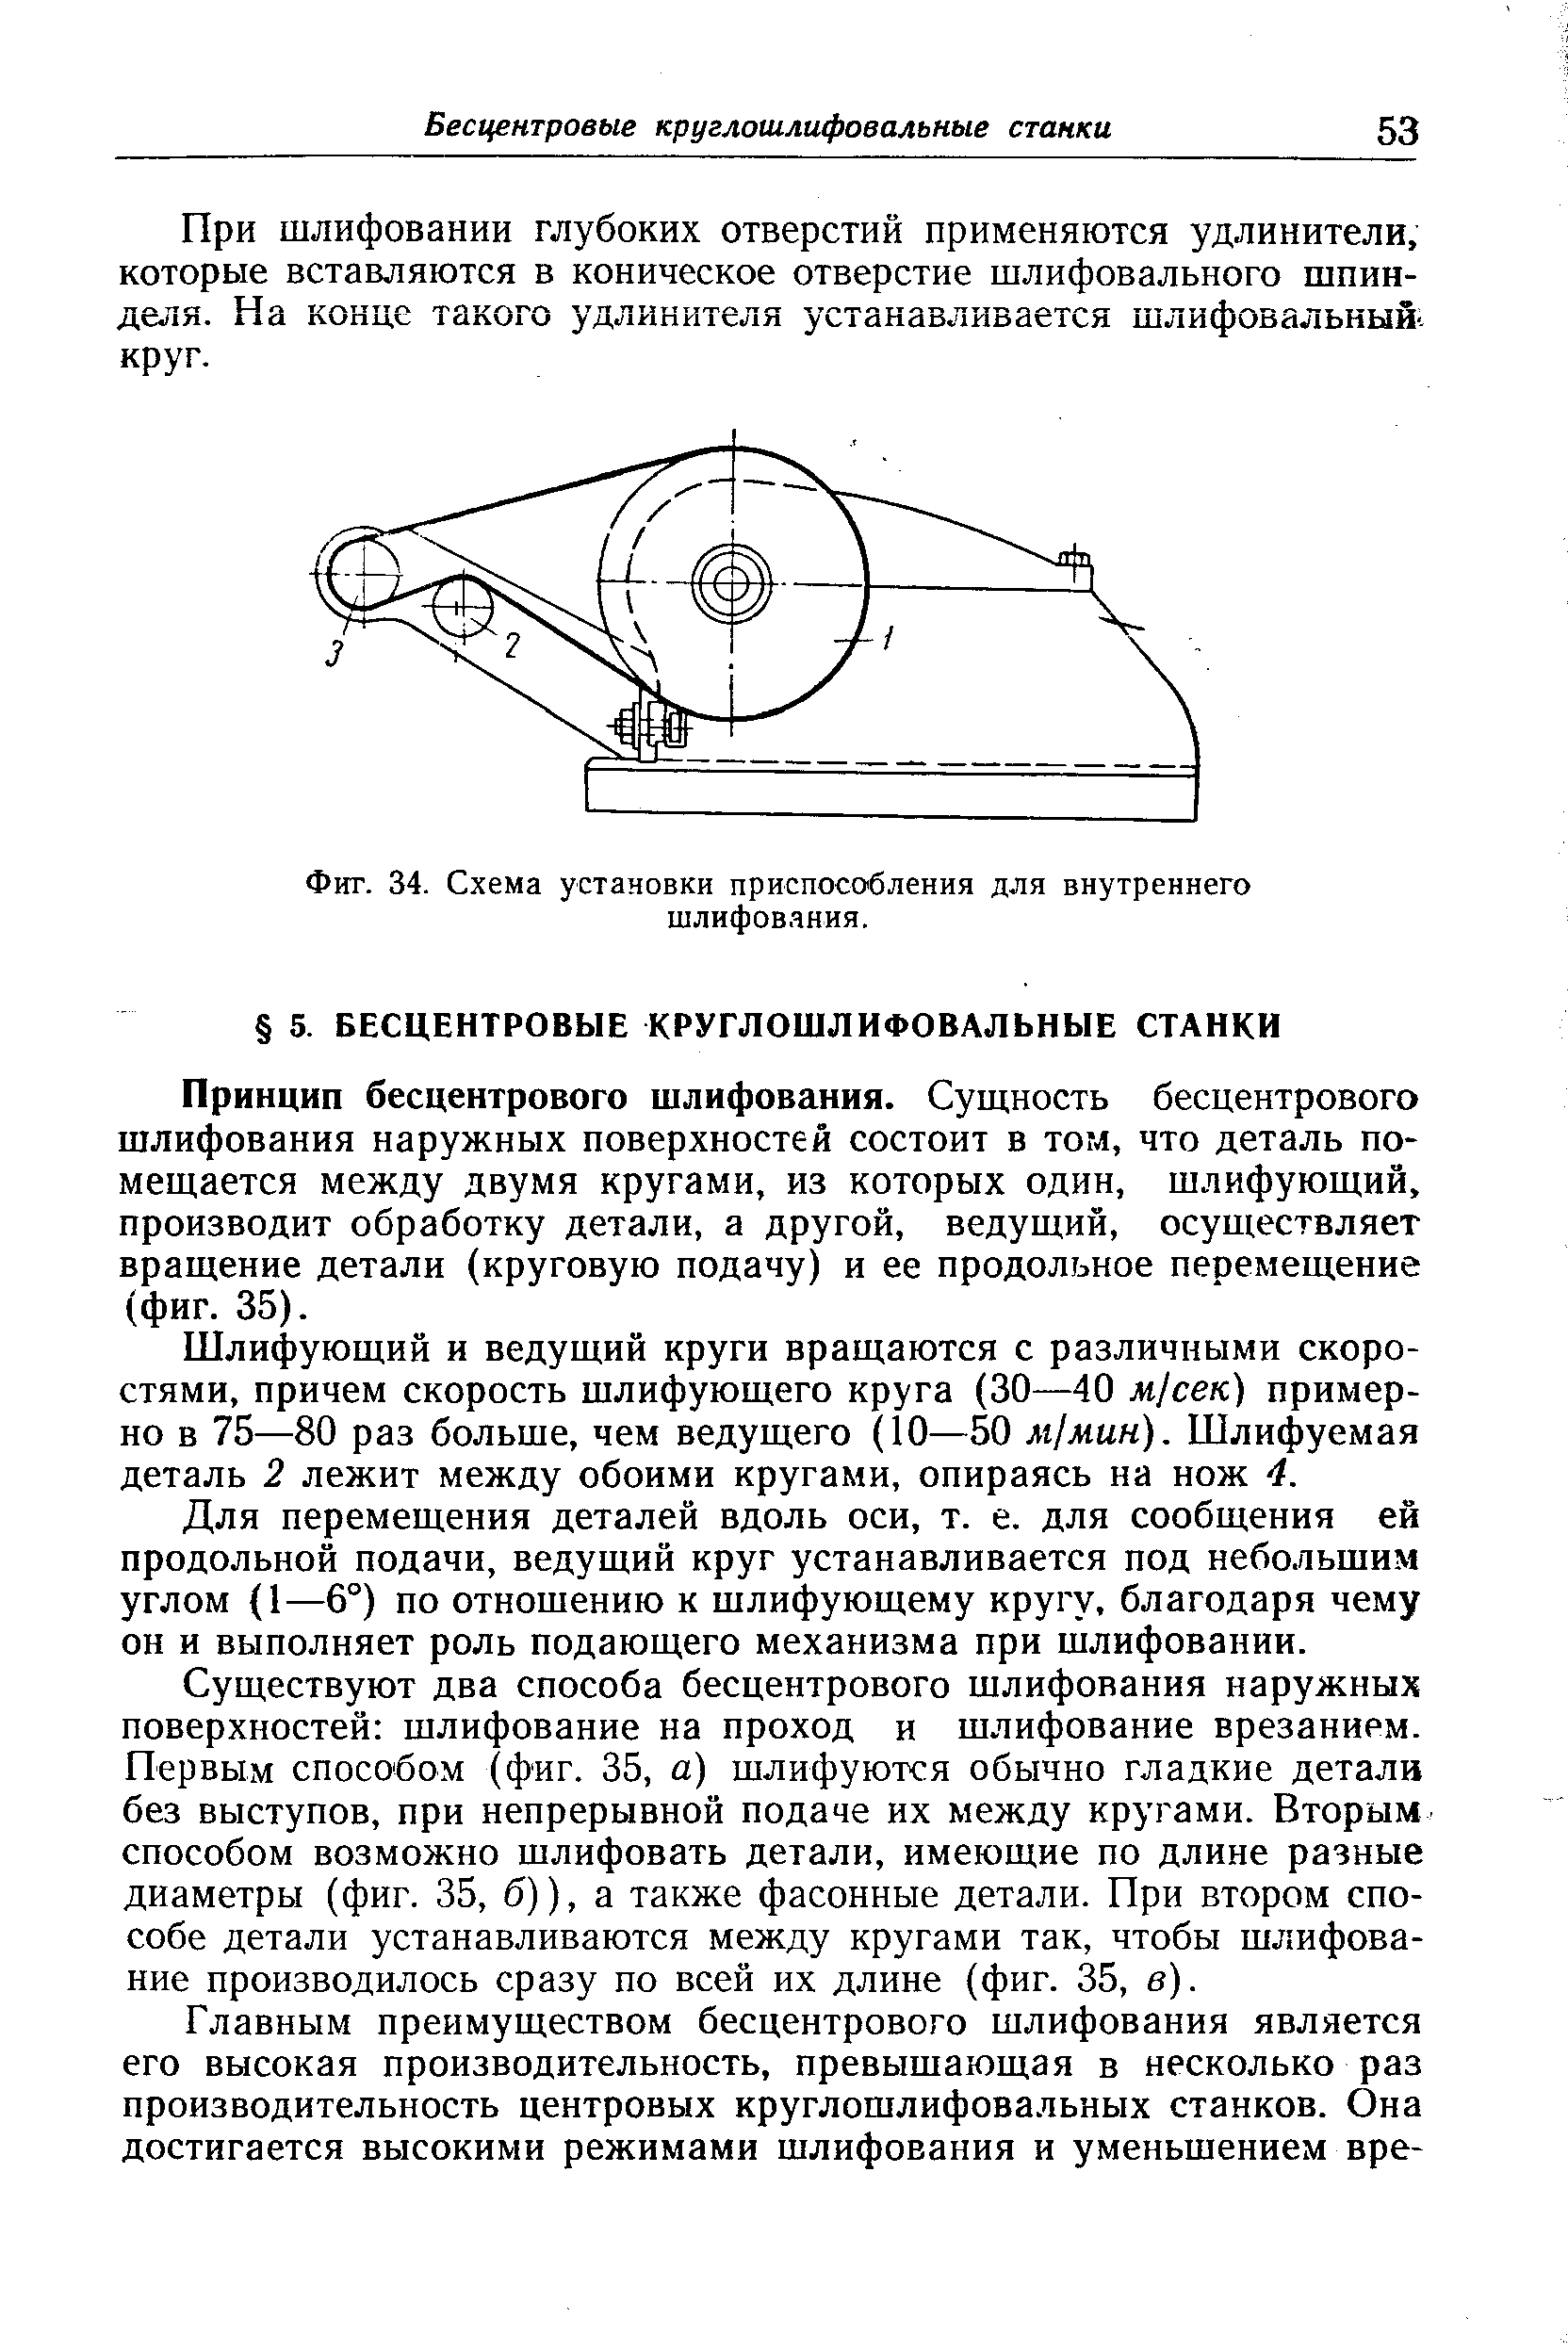 Фиг. 34. Схема установки приспособления для внутреннего шлифования.
